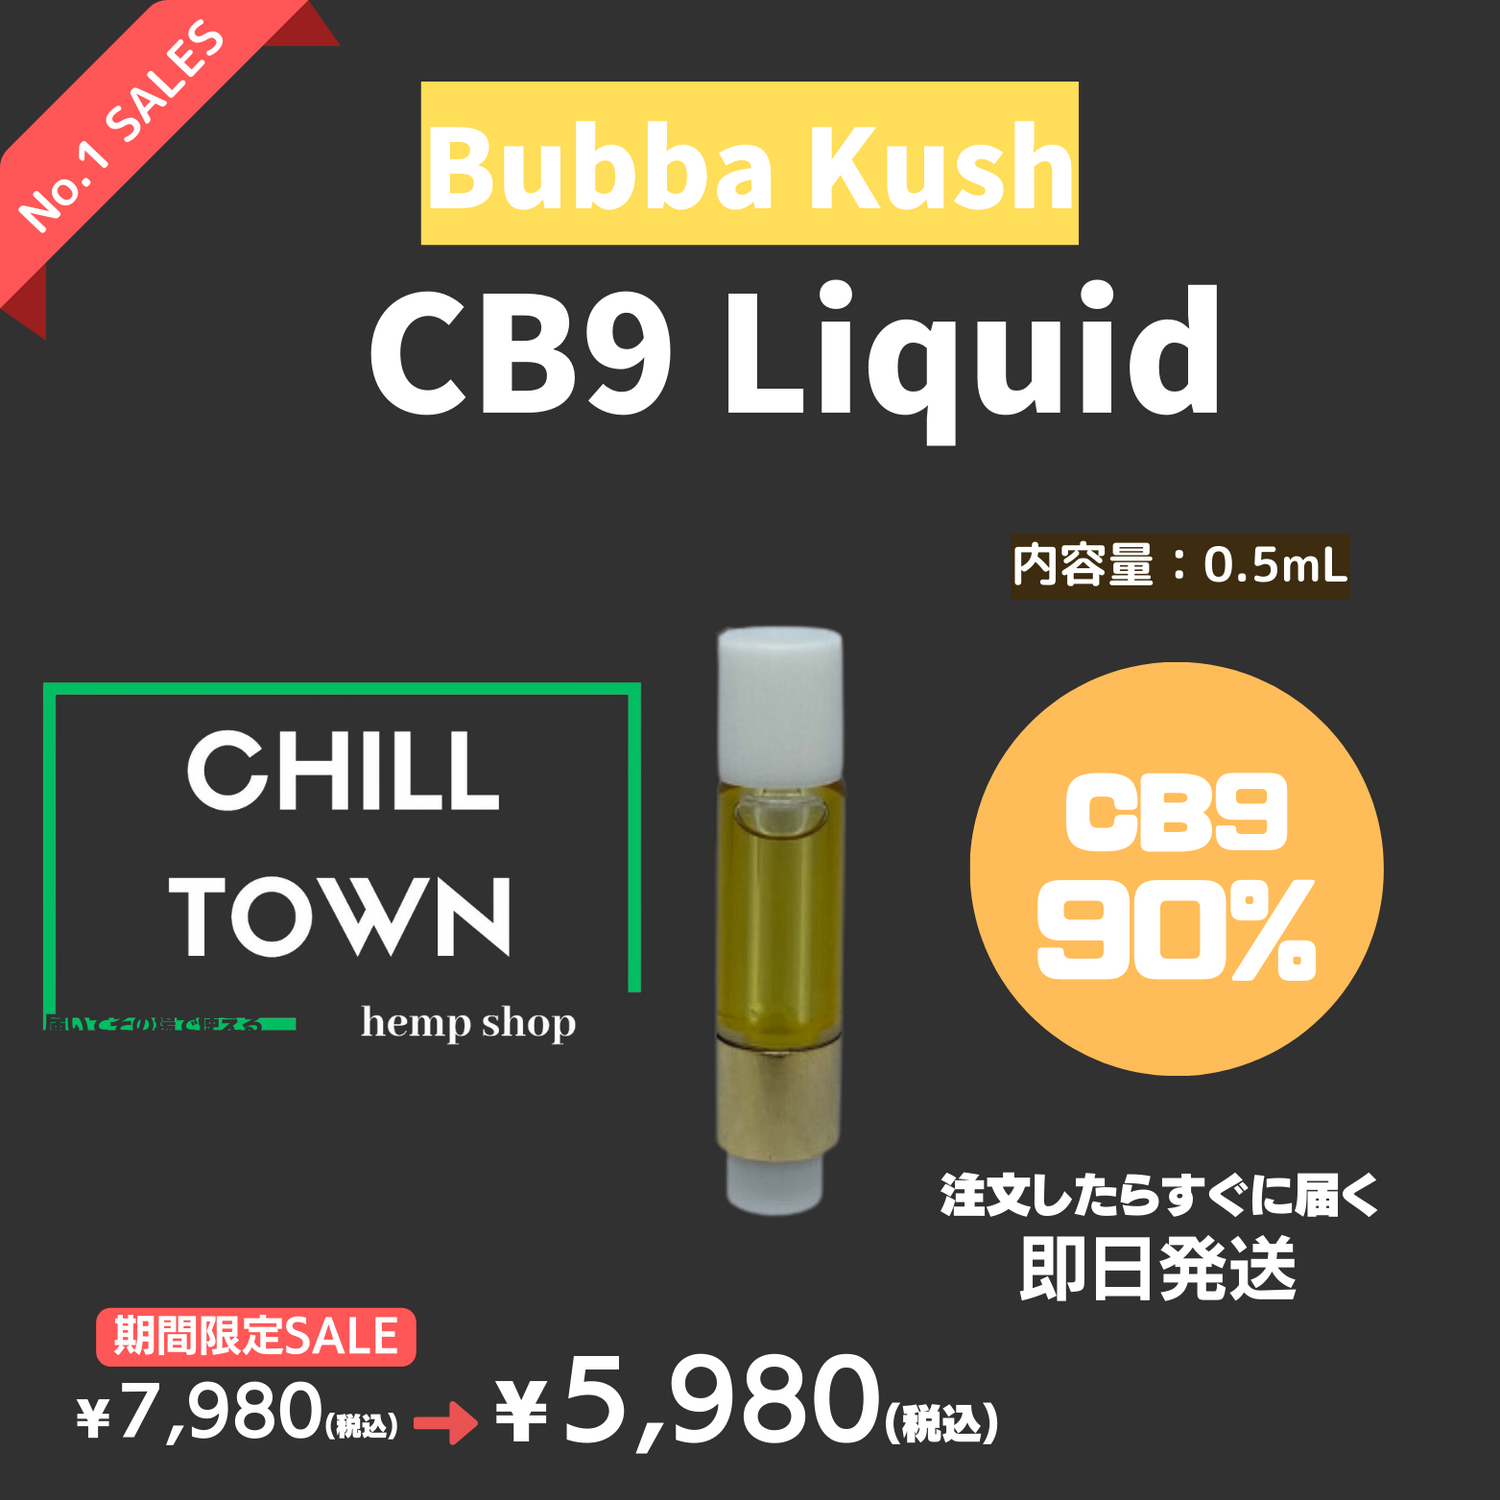 CB9リキッド90% (Bubba kush)